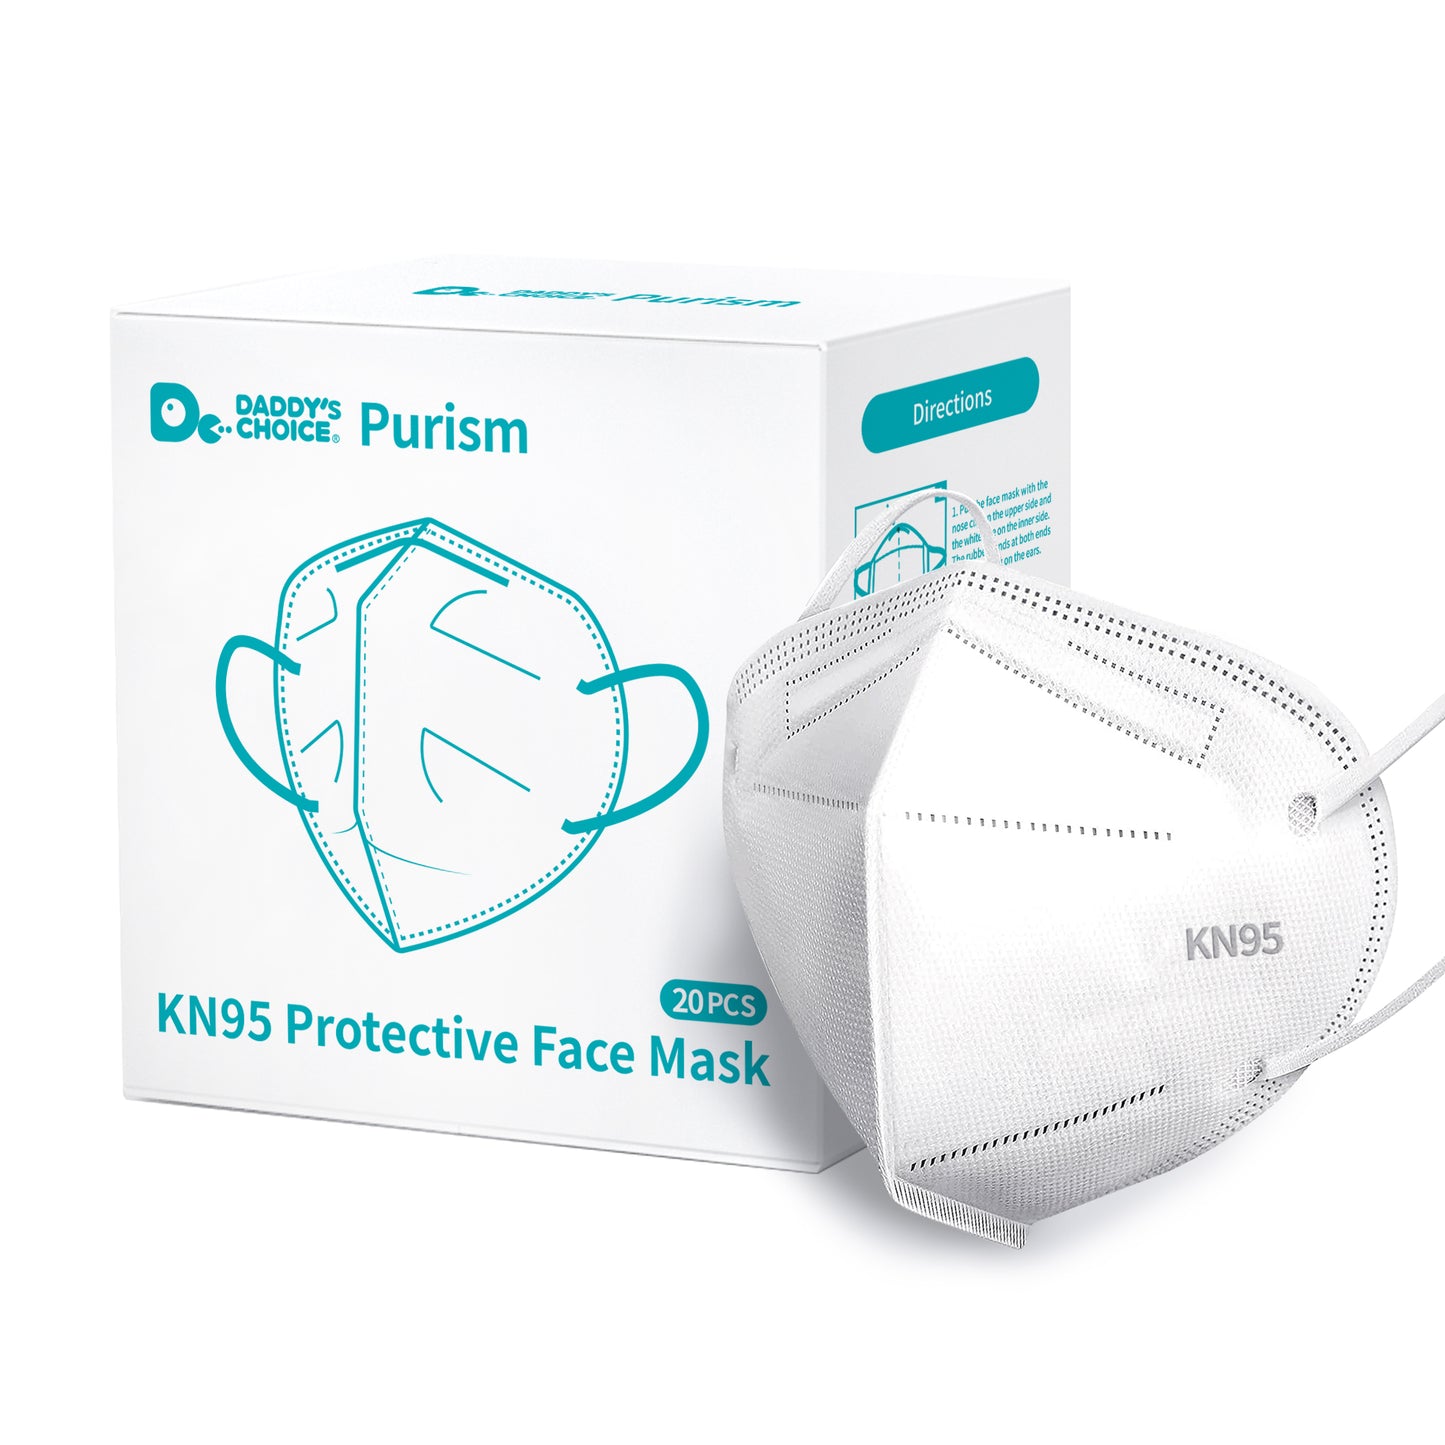 KN95 Protective Face Mask 20pcs/box, 20pcs/100pcs/200pcs/300pcs/960pcs, Free shipping to US